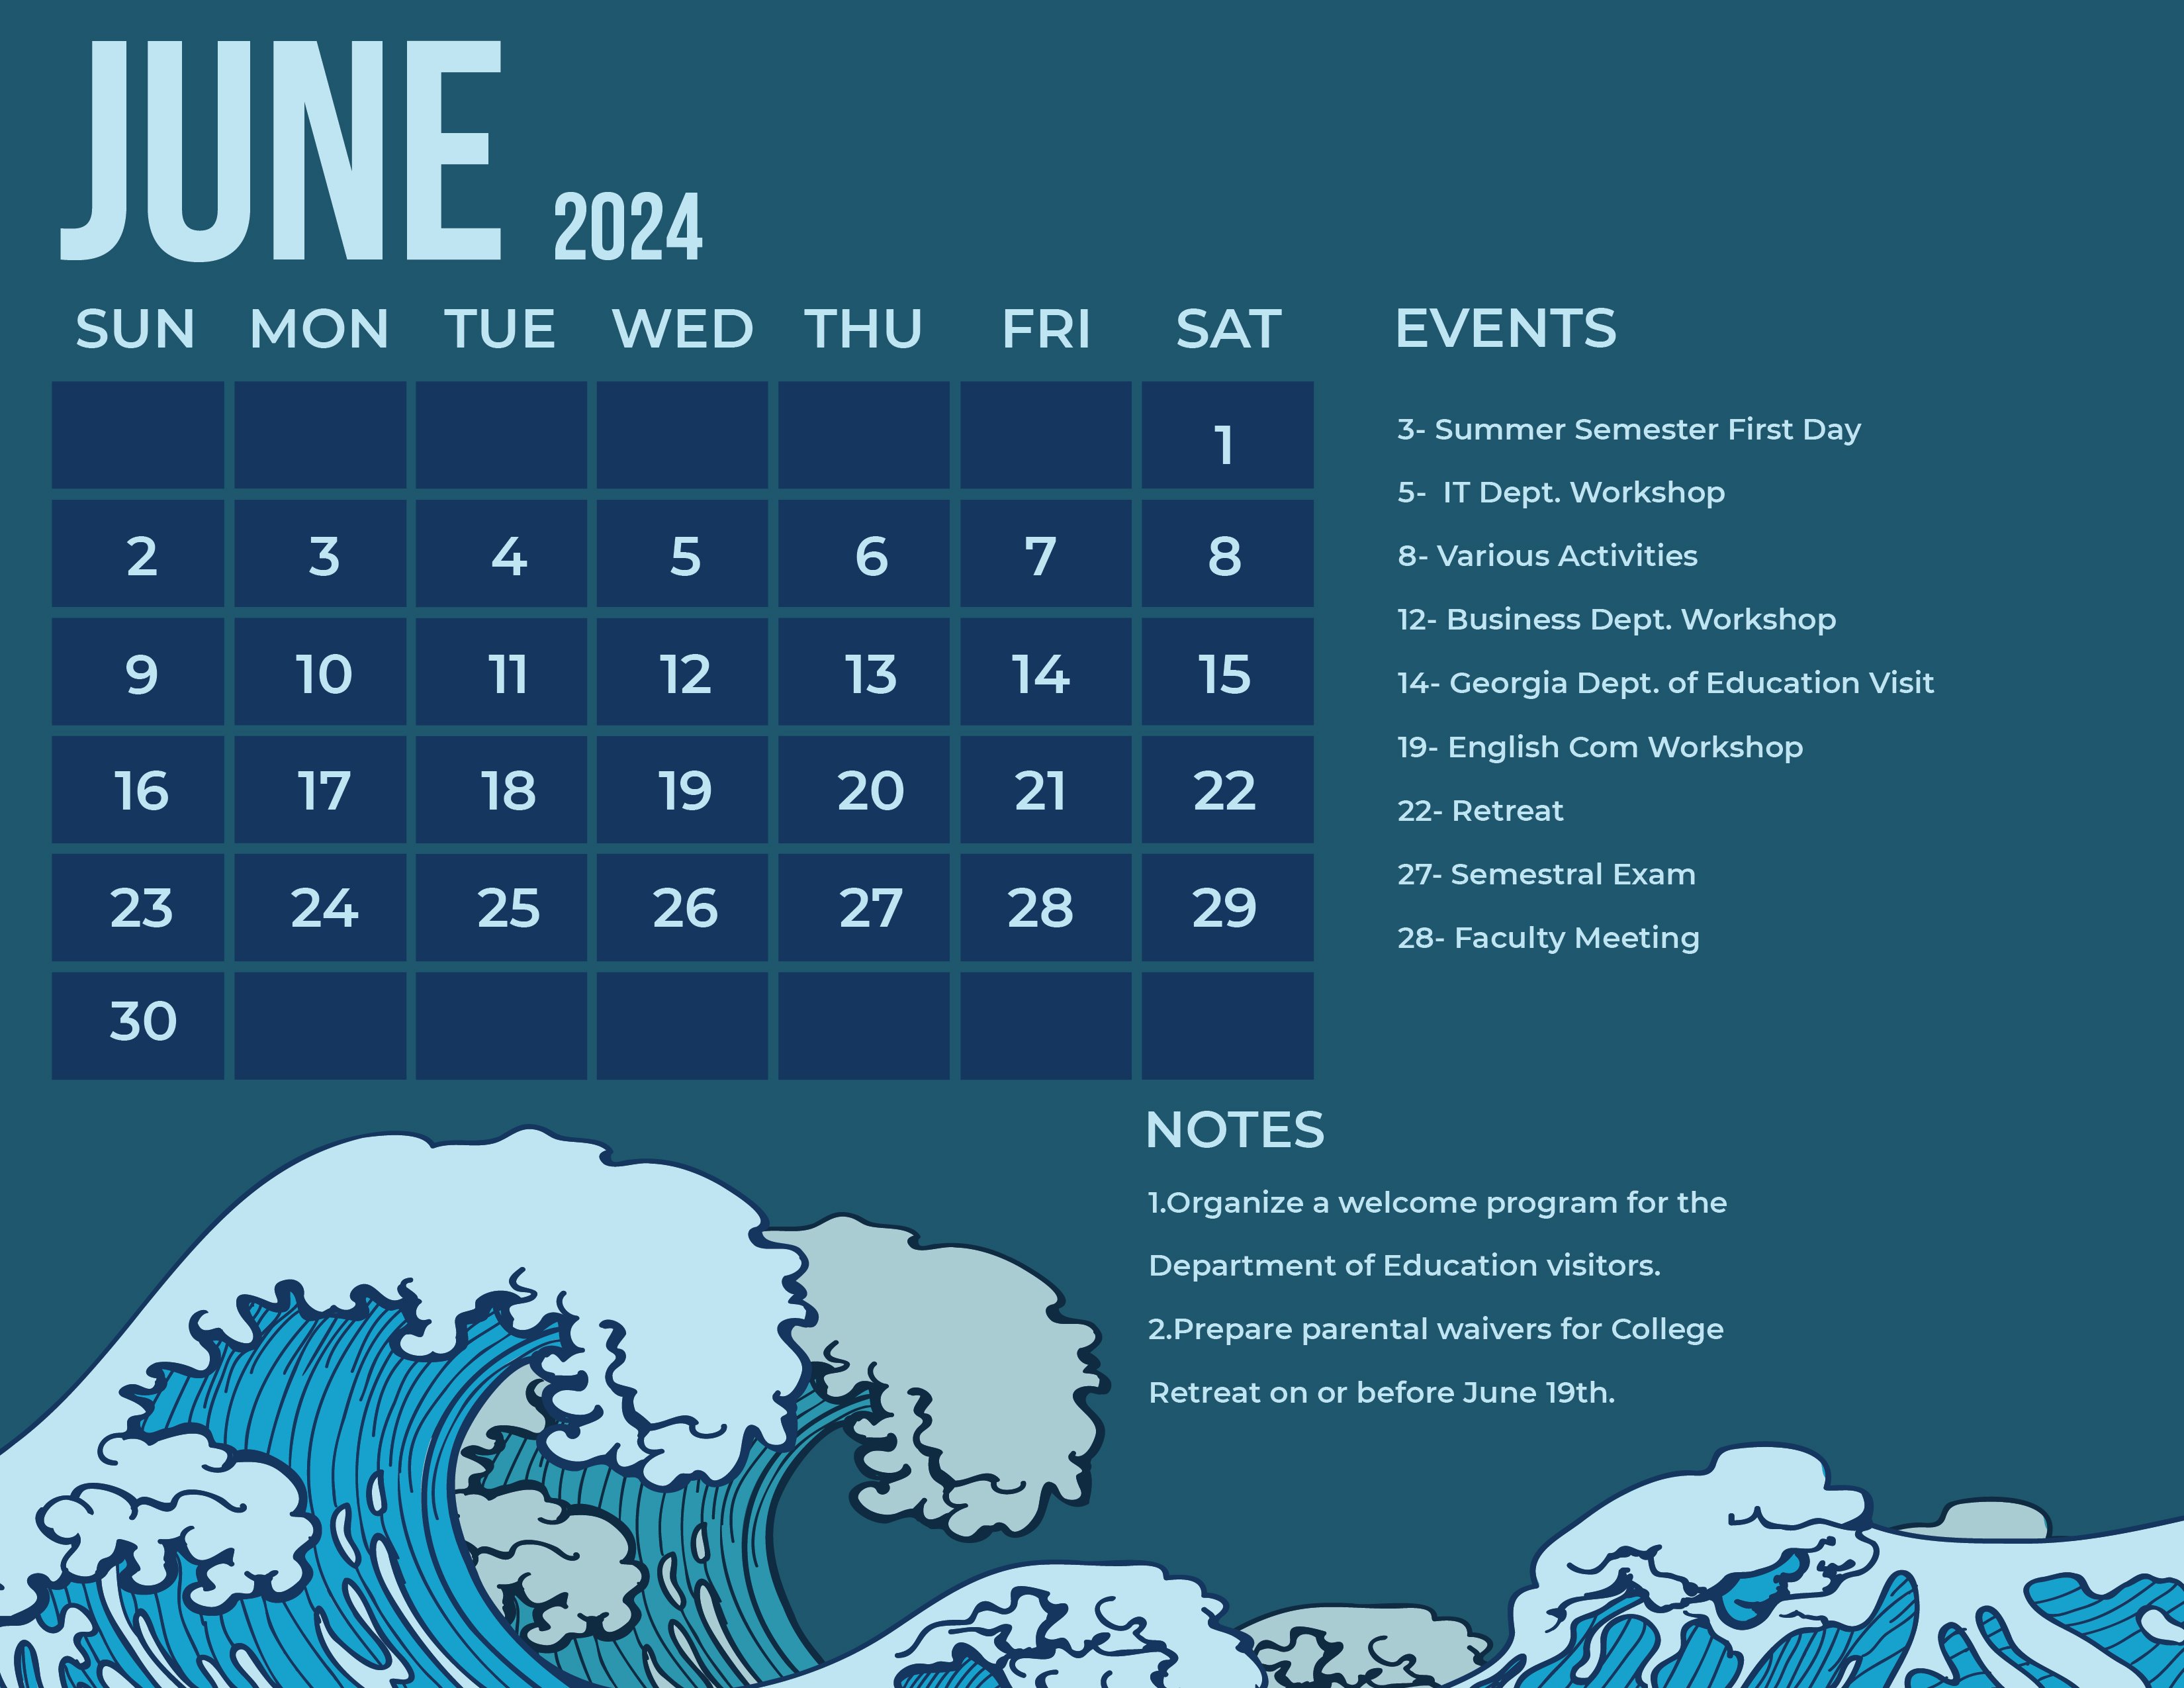 Blue June 2024 Calendar in Word, Illustrator, EPS, SVG, JPG